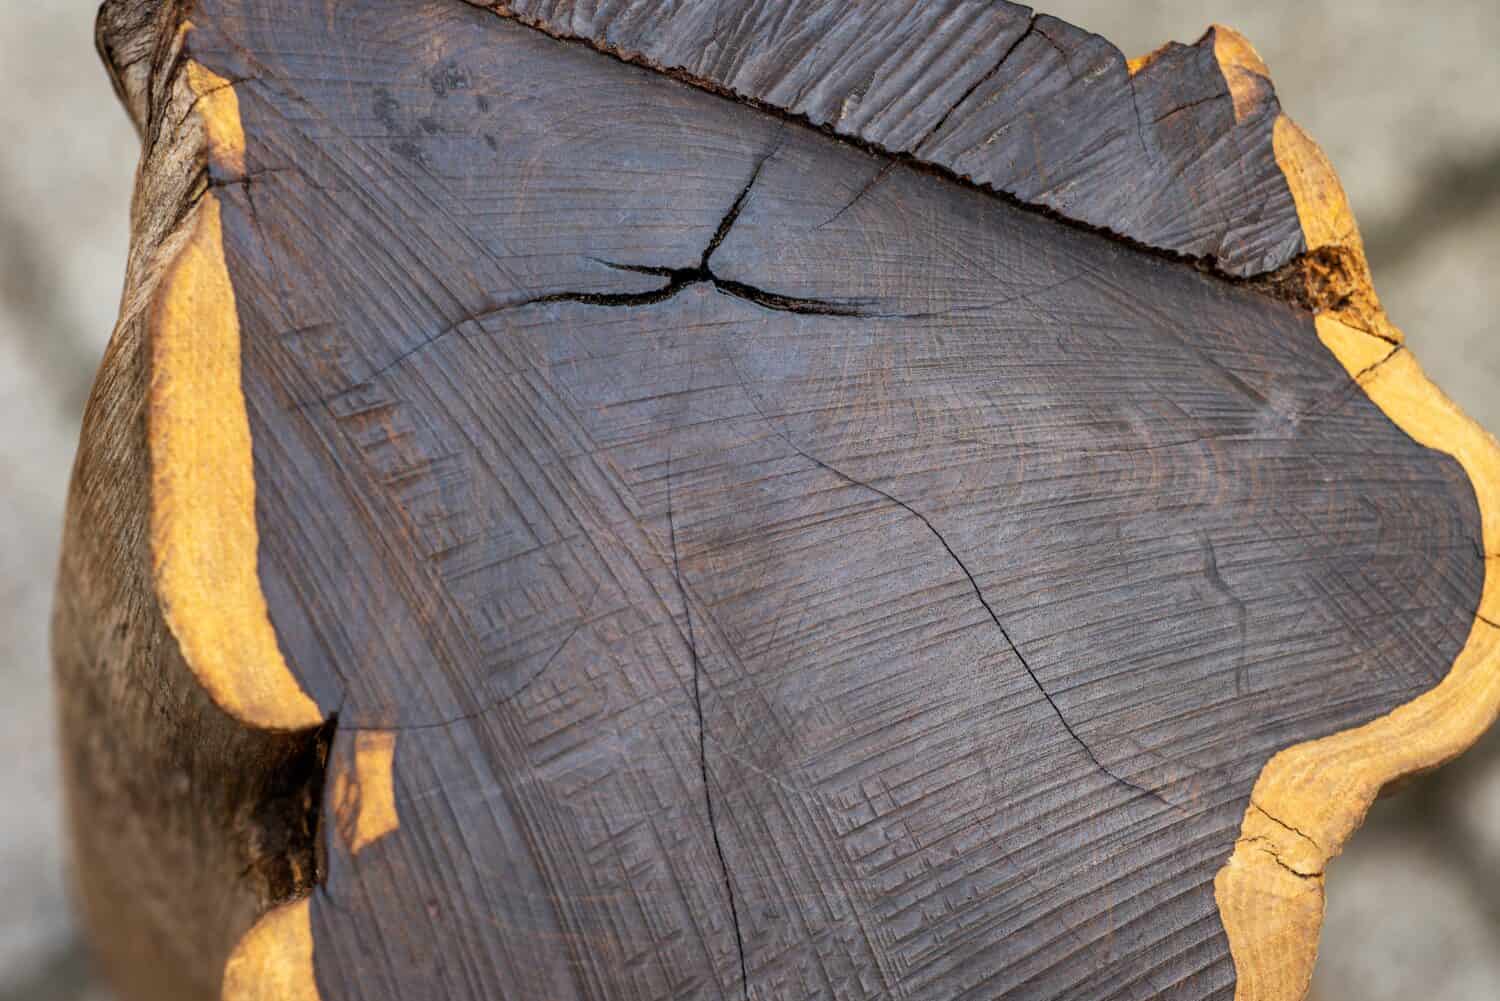 Sezione trasversale dell'albero di ebano nero.  Uno dei legni più duri al mondo 